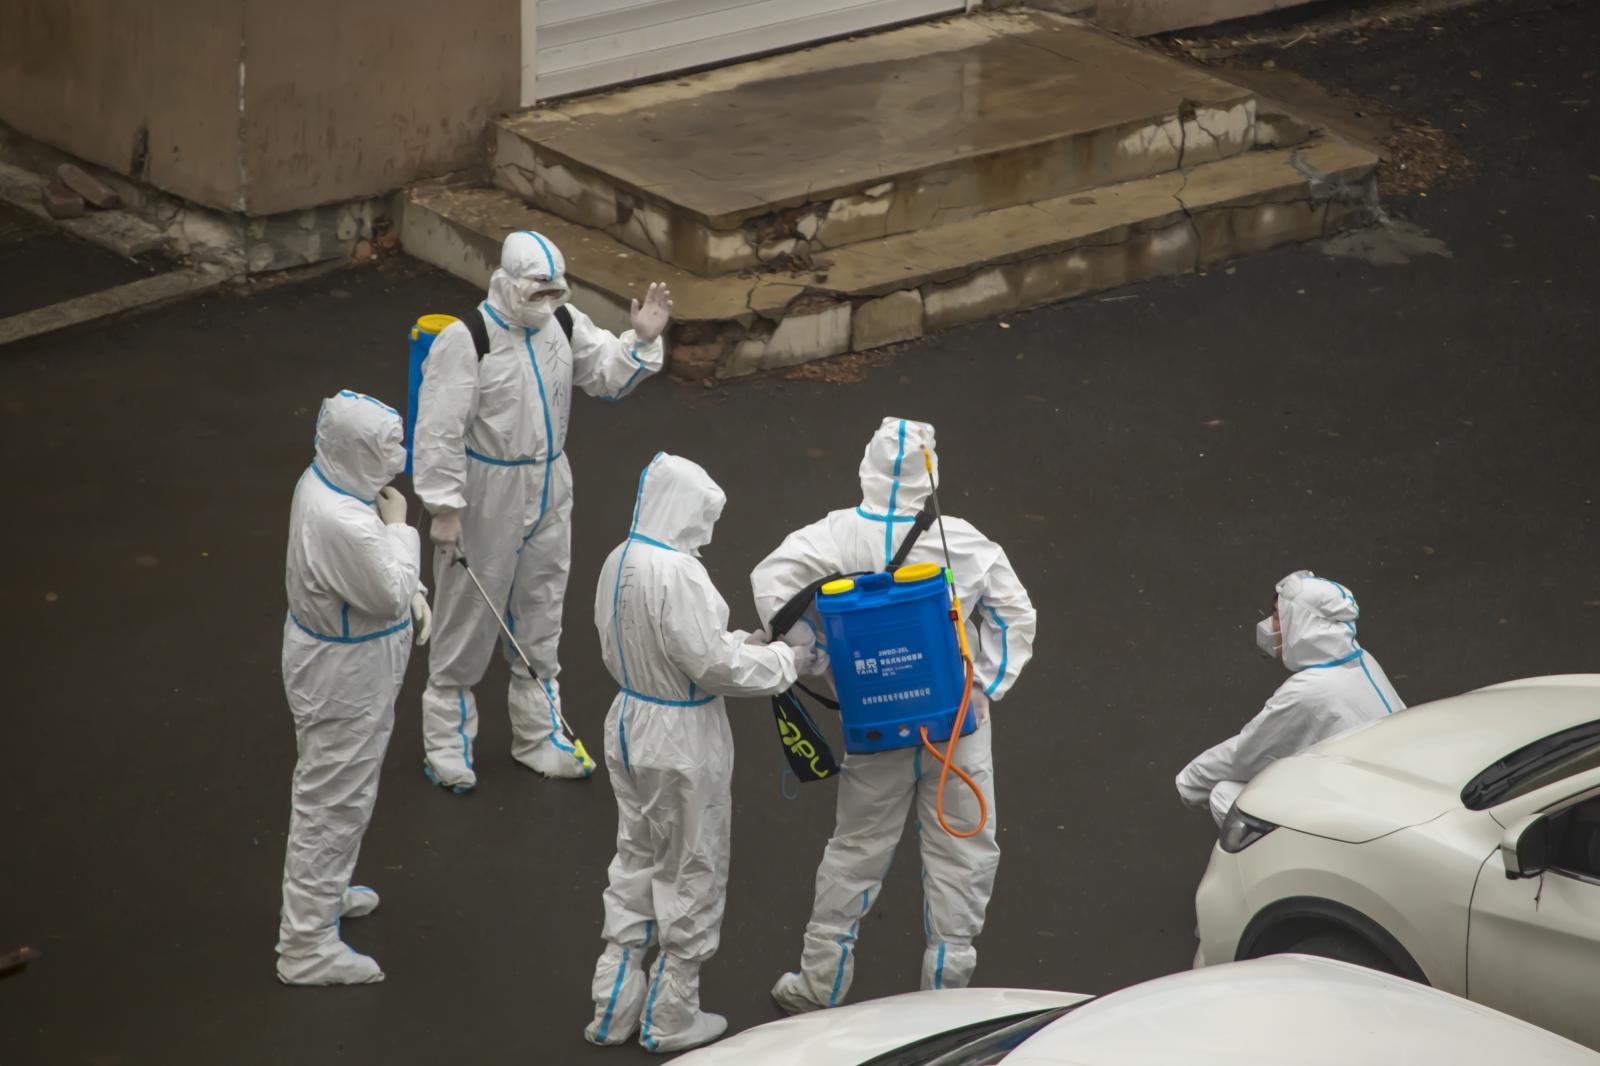  Covid-19 : la pandémie « très probablement » provoquée par une fuite de laboratoire à Wuhan, selon le FBI